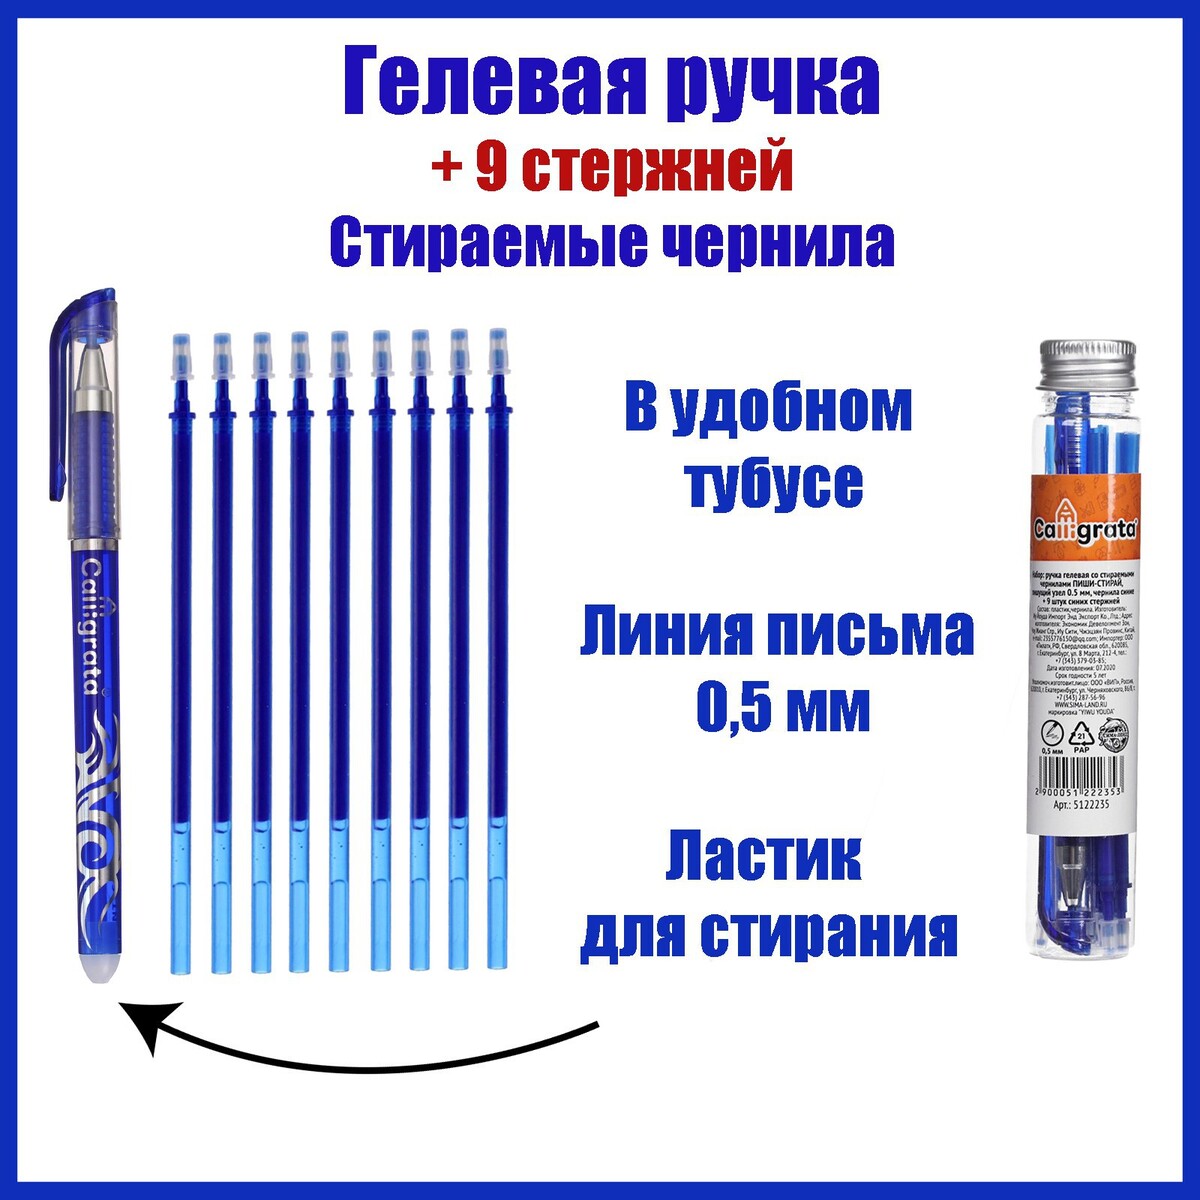 Набор ручка гелевая со стираемыми чернилами, пишущий узел 0.5 мм, чернила синие+9 синих стержней набор шариковых ручек 12 штук 0 7мм корпус прозрачный игольчатый пишущий узел чернила синие